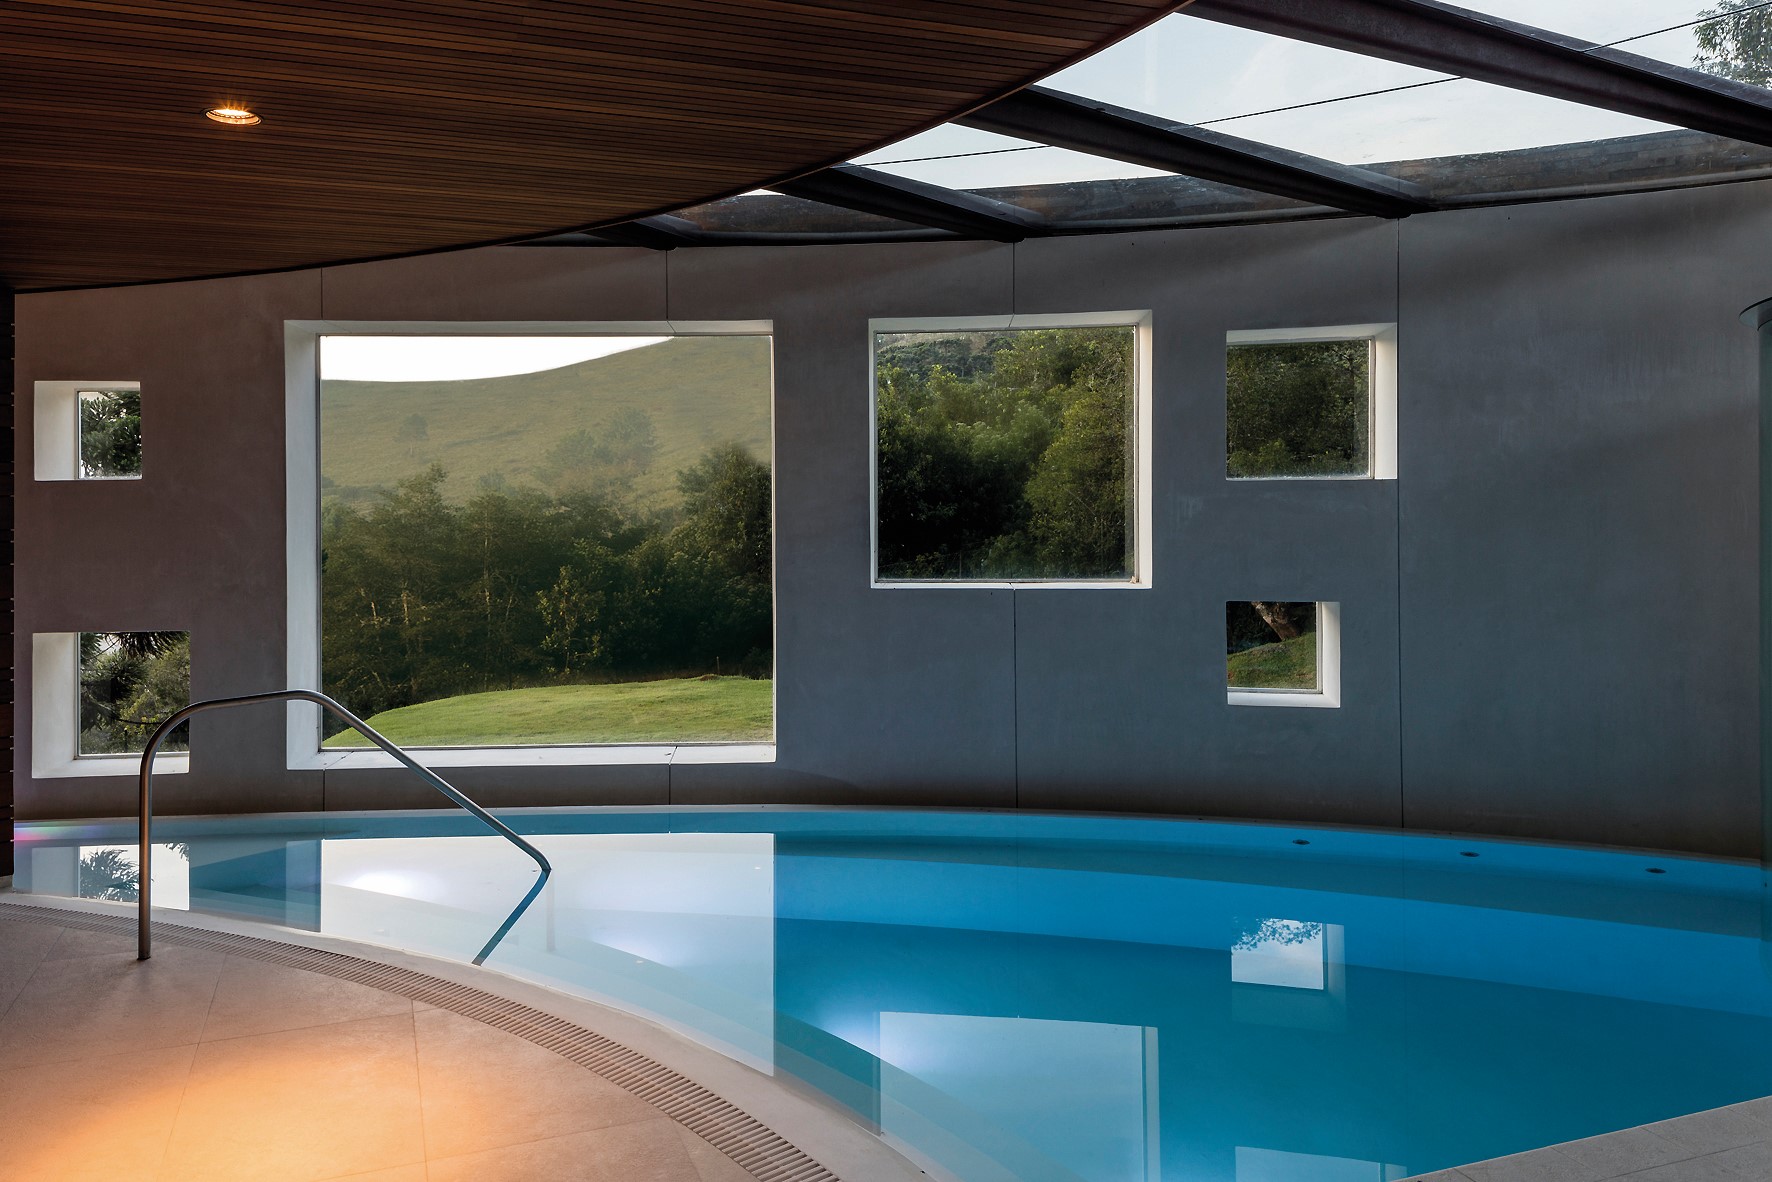 位於 1 樓的室內泳池，即使受限結構，建築師依然盡可能開窗，為室內框住戶外的自然風景。